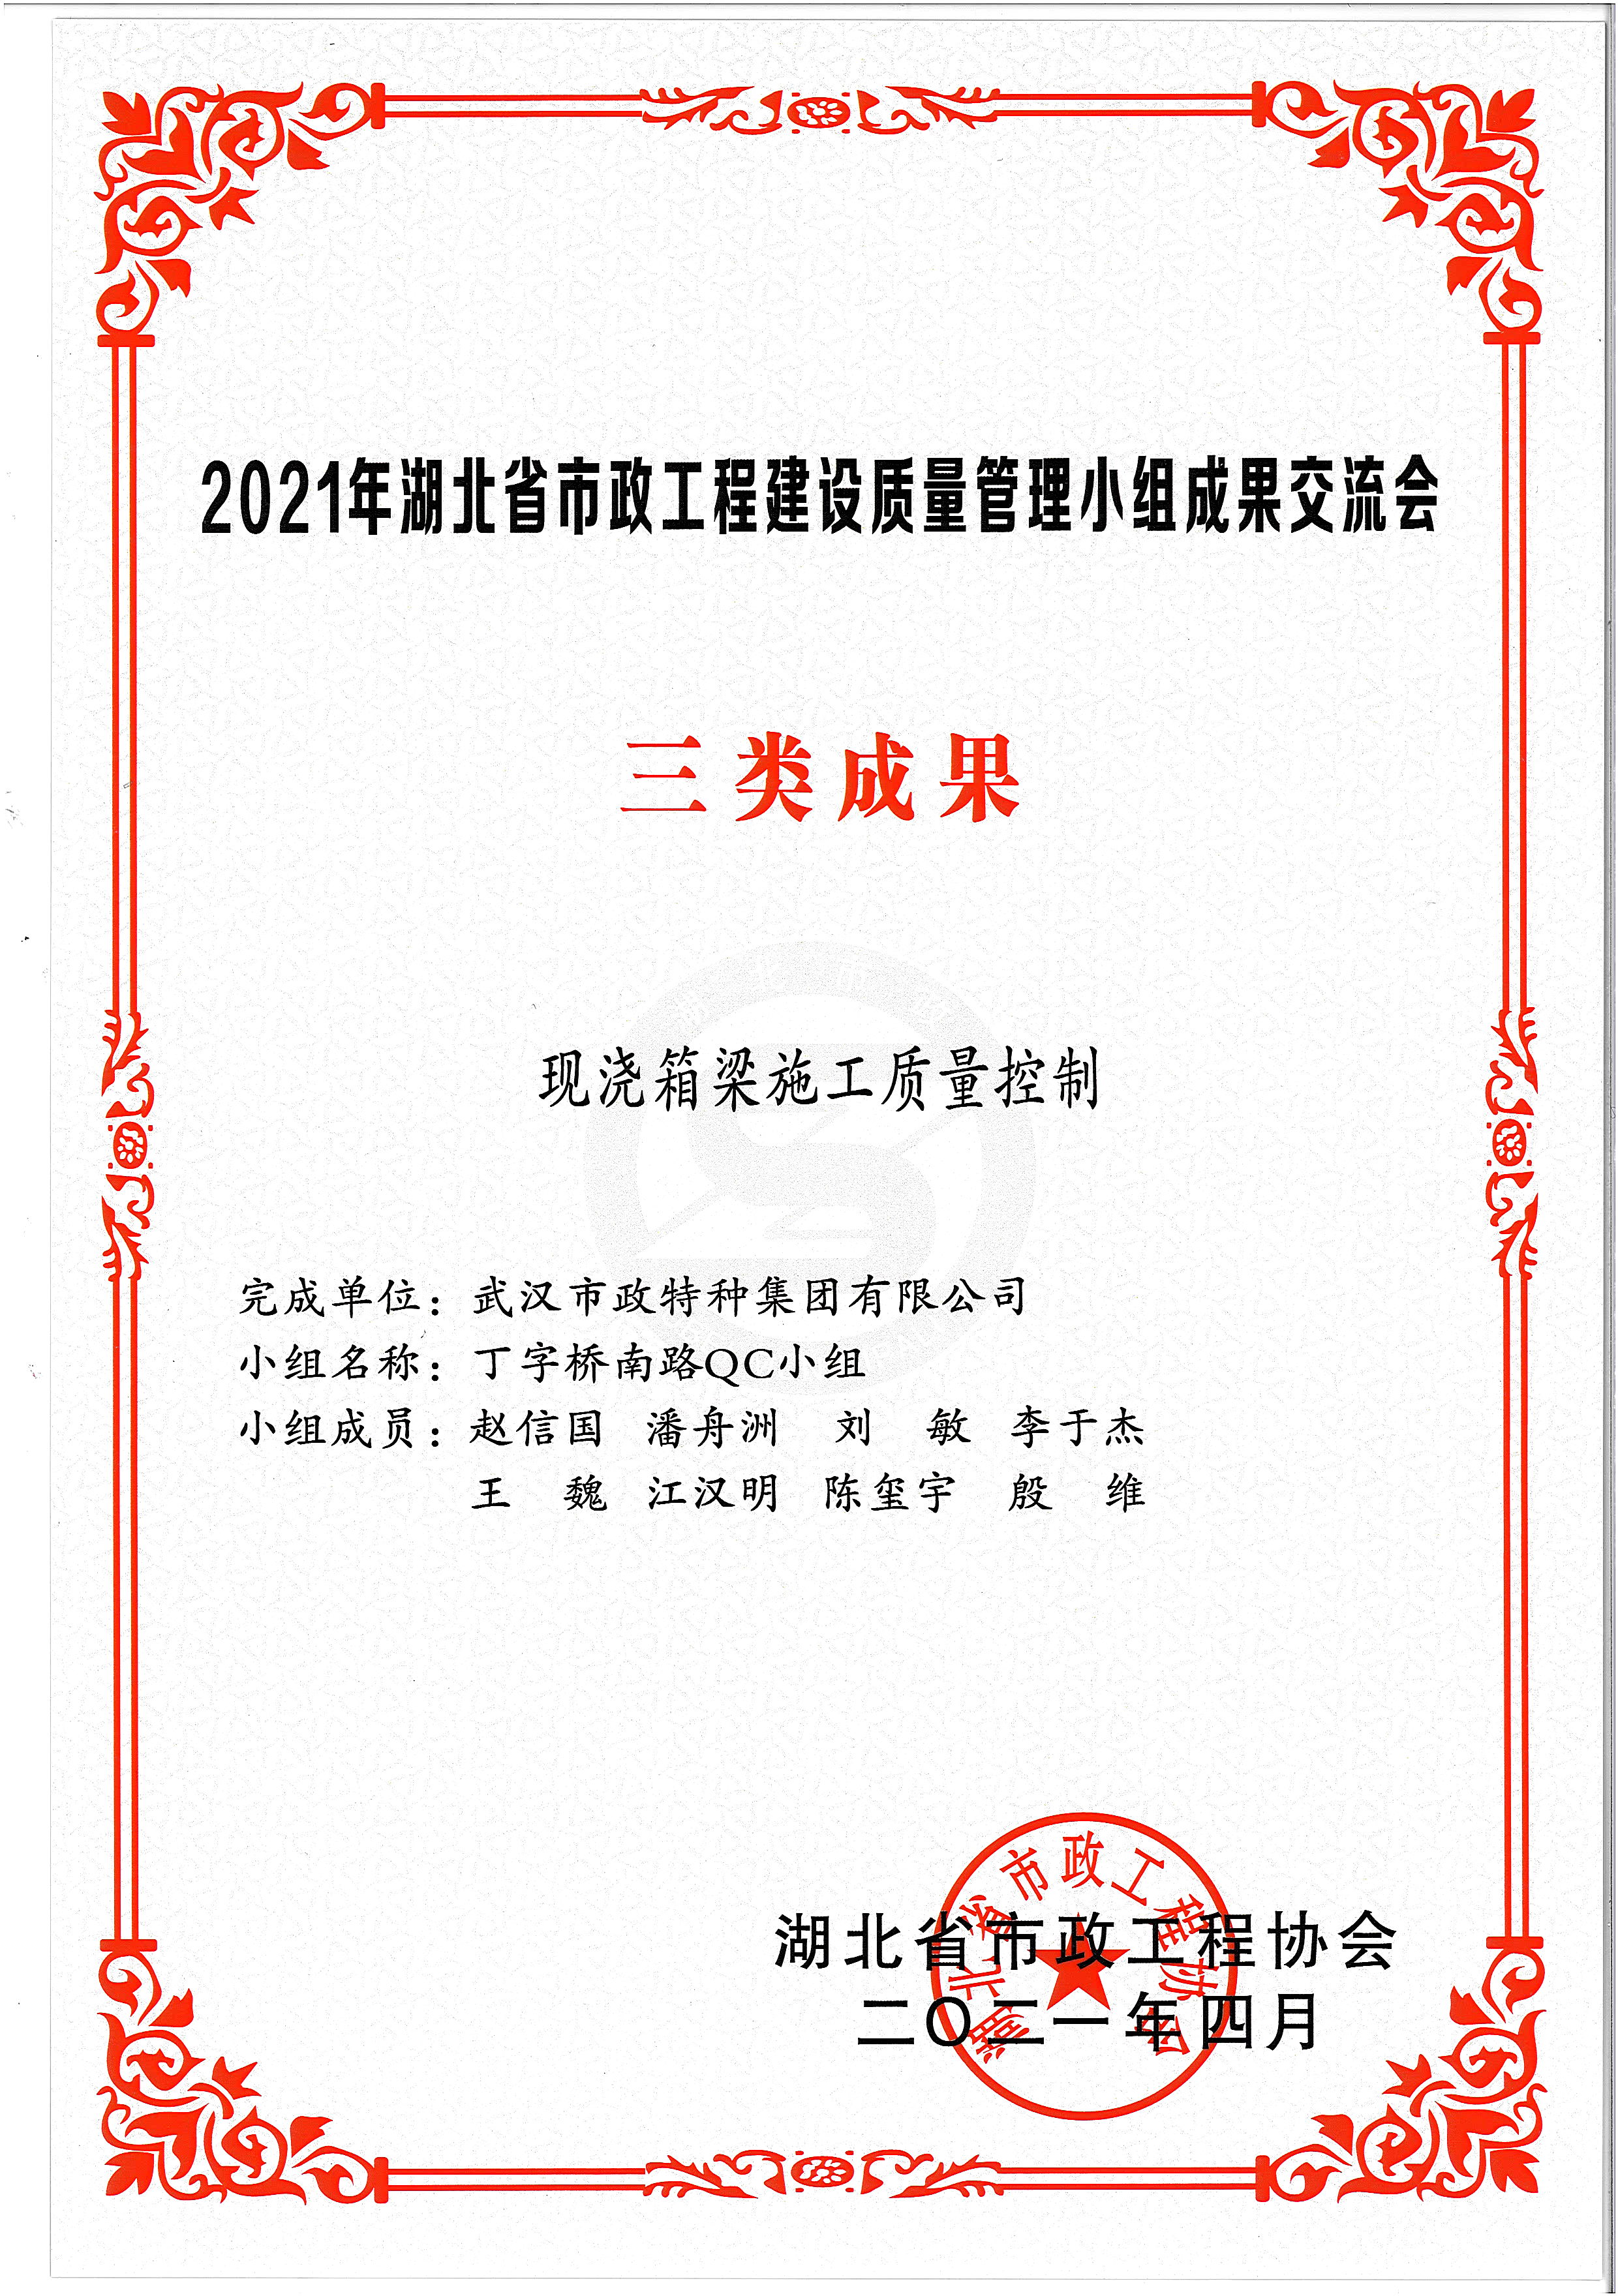 湖北省市政協會QC成果獎——現澆箱梁施工質量控制